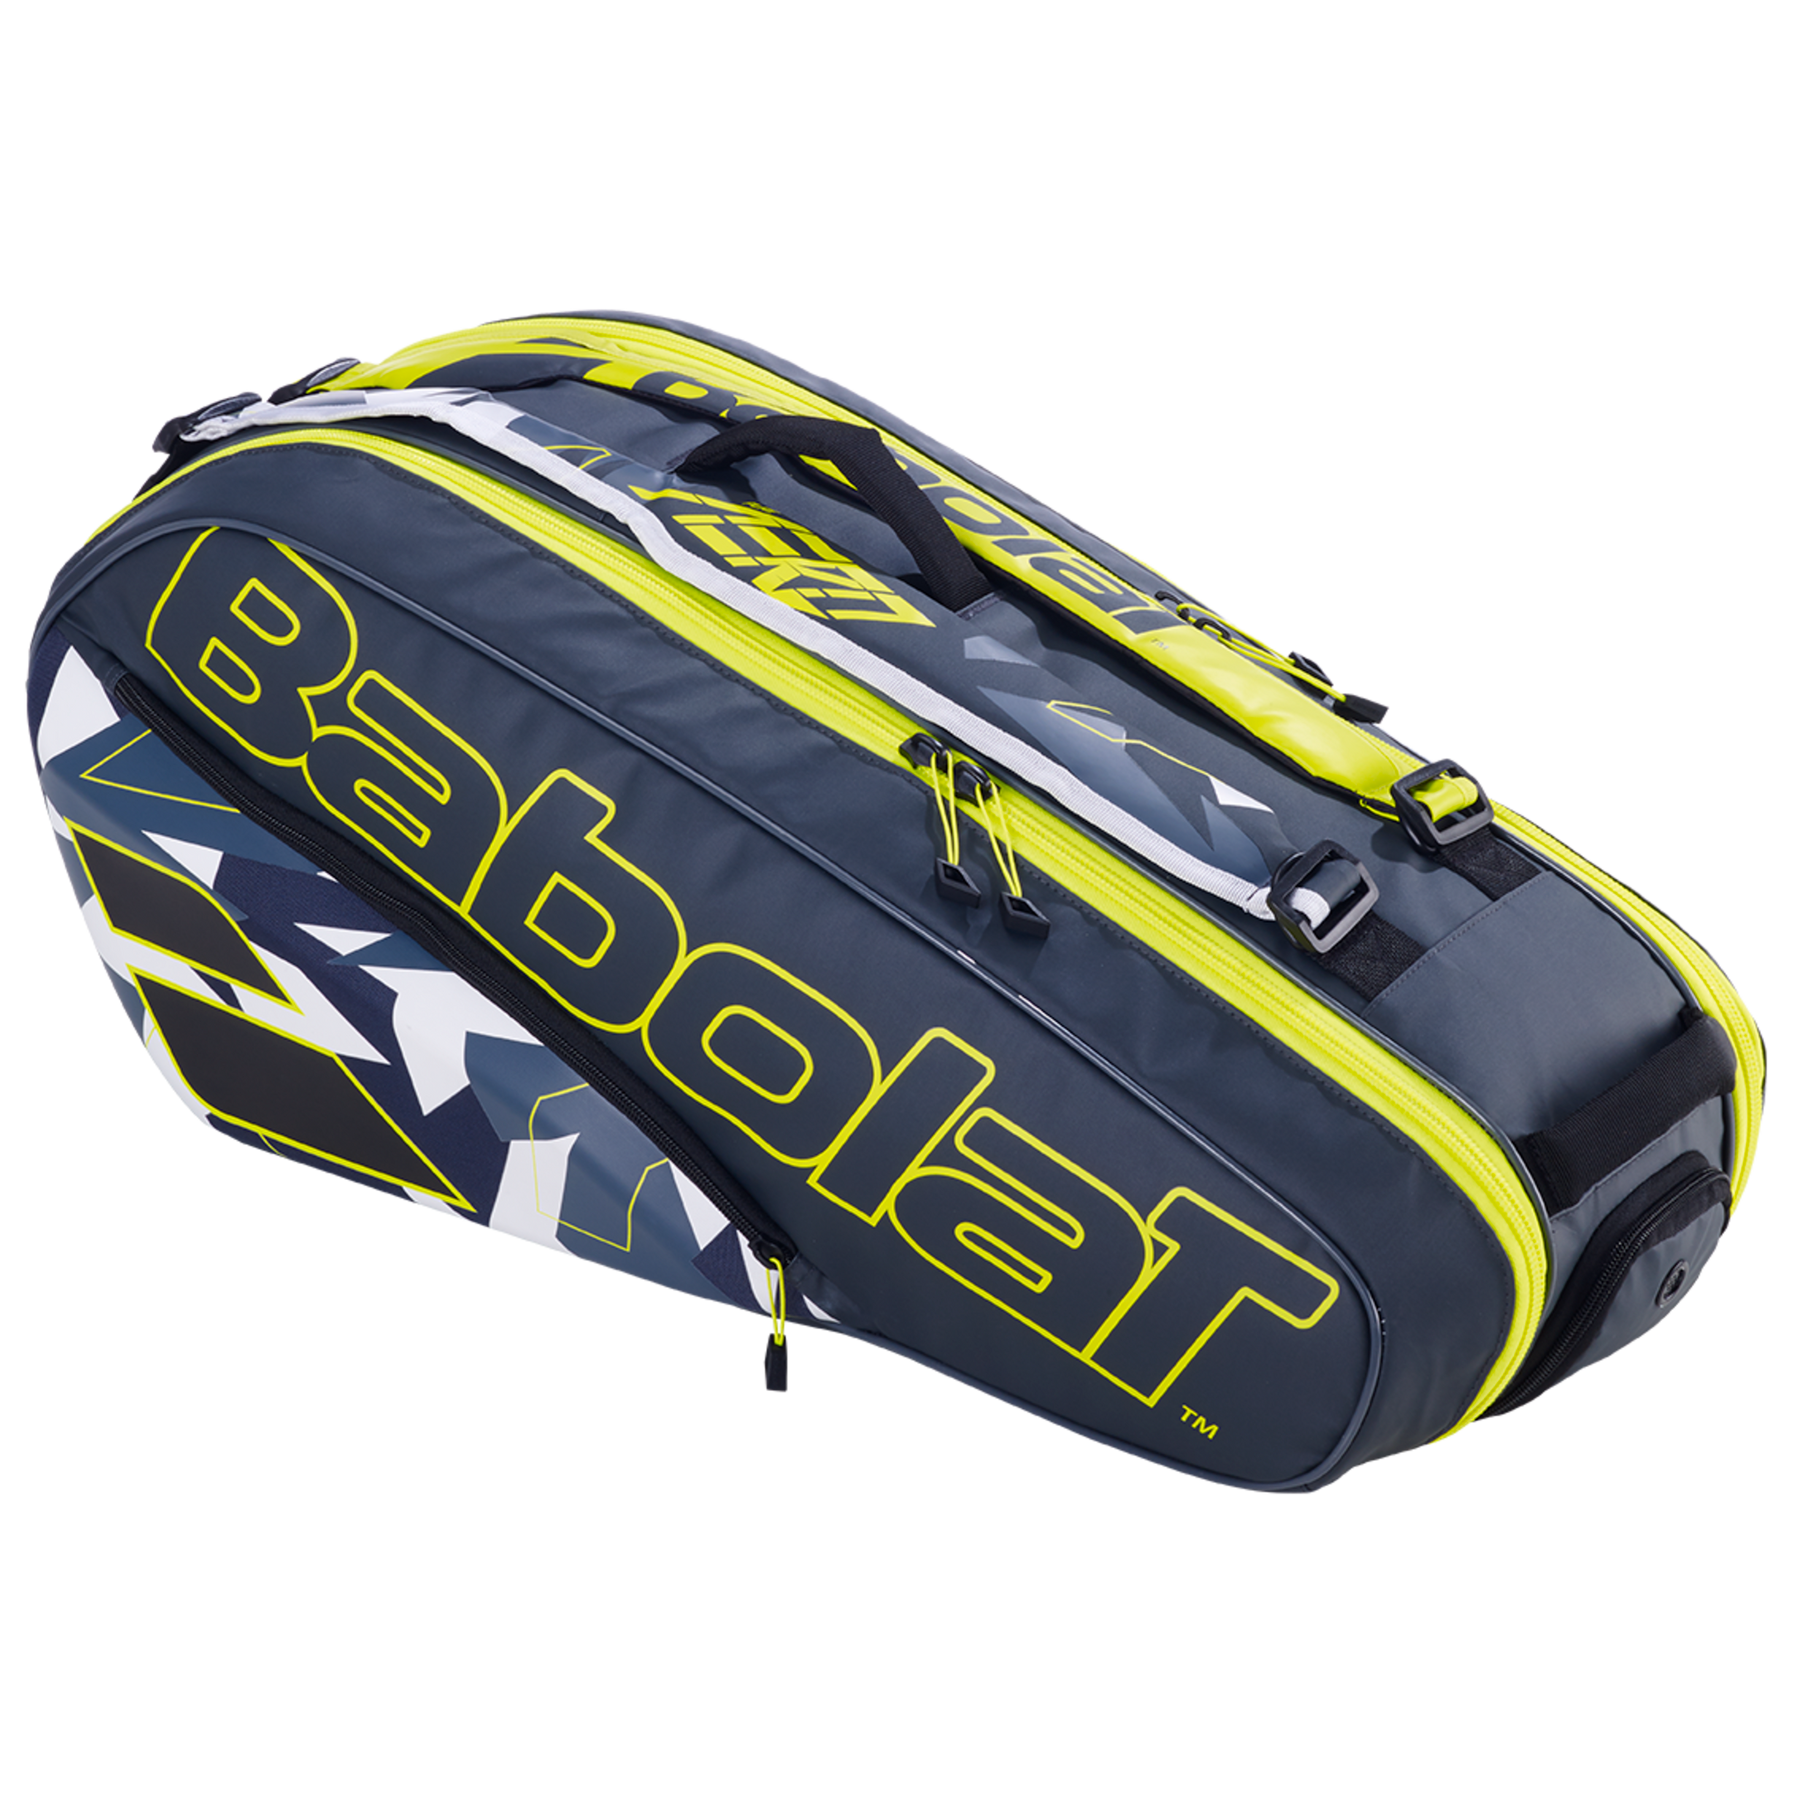 Babolat Racket Holder X 6 Pure Aero